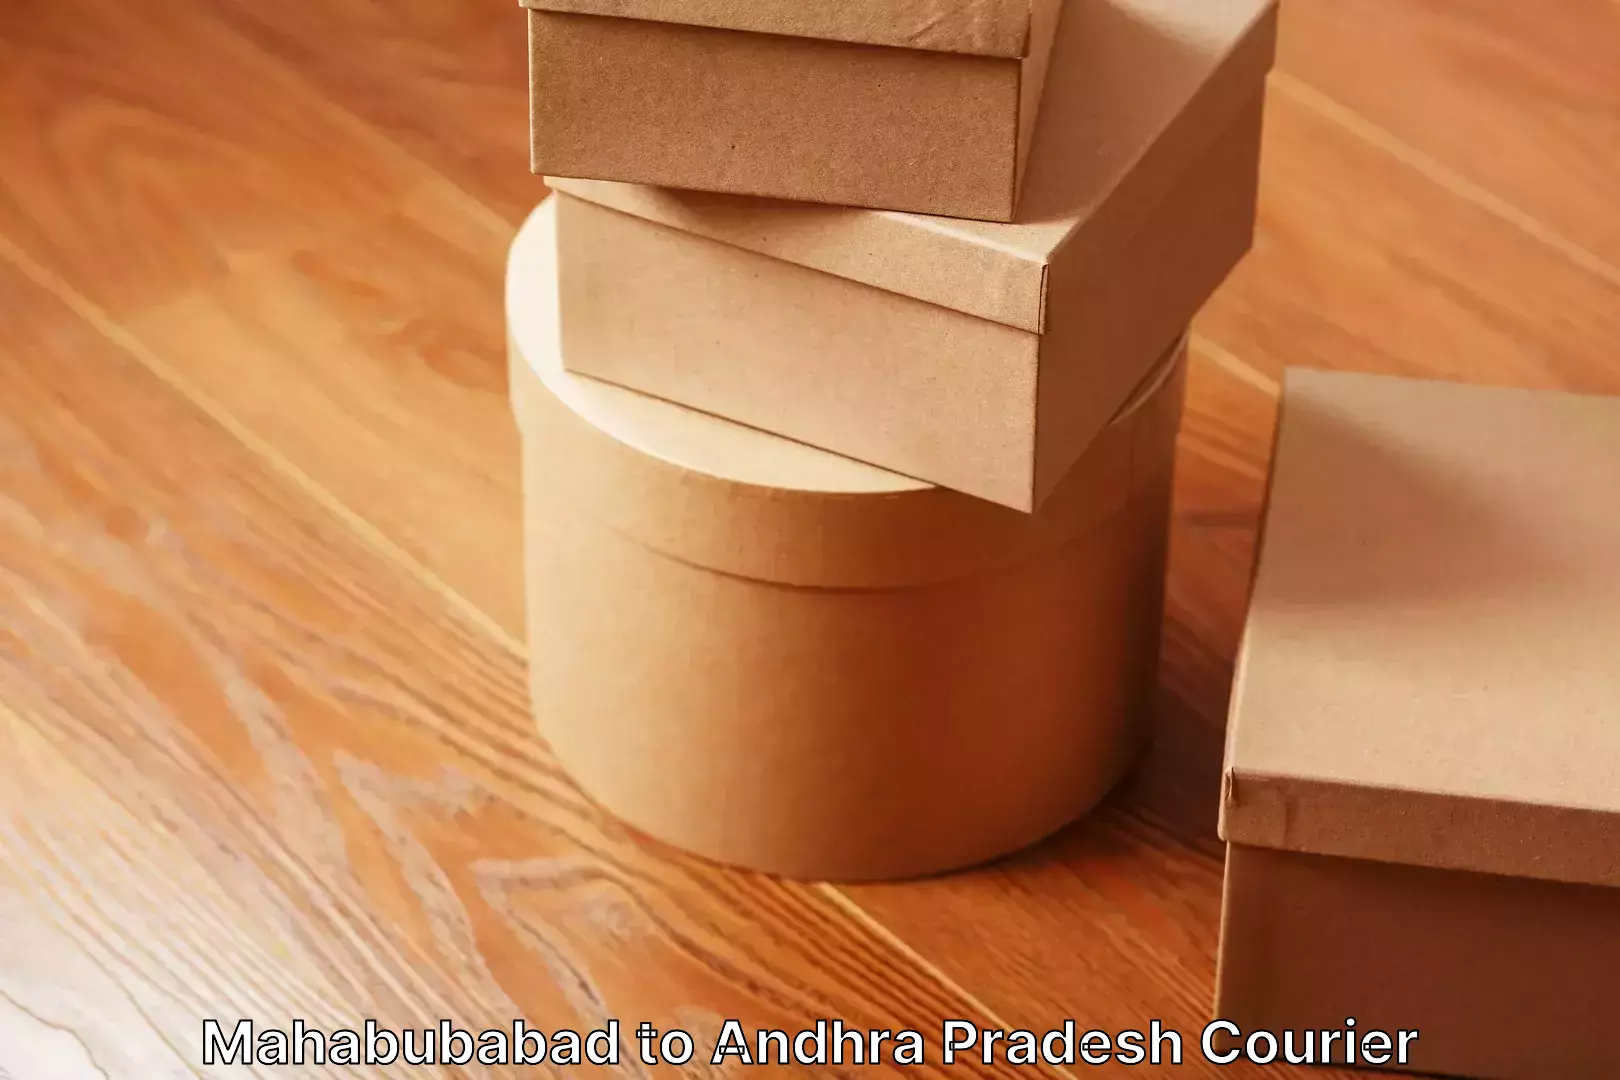 Household moving experts Mahabubabad to Andhra Pradesh